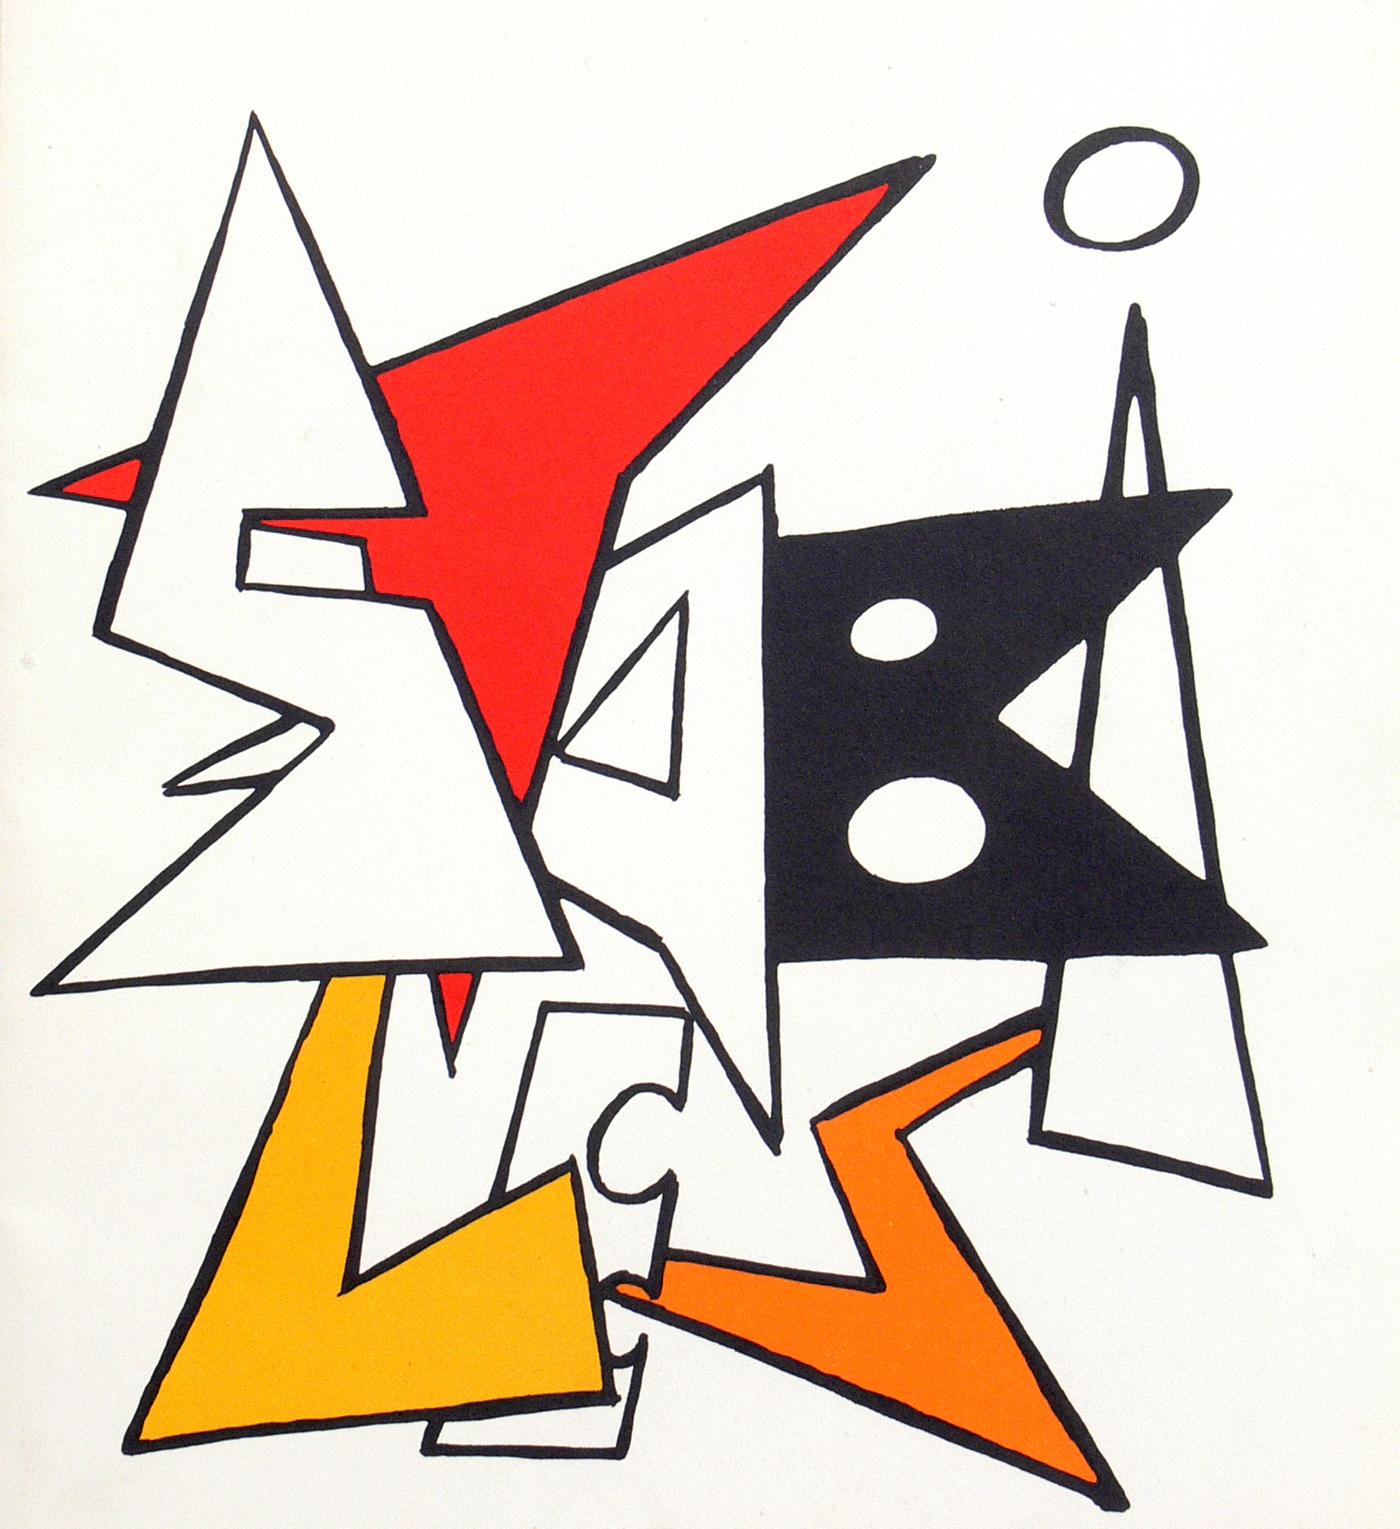 Auswahl von Farblithografien von Alexander Calder, Frankreich, ca. 1960er Jahre. Wir haben eine Gruppe dieser Farblithografien aus dem Nachlass eines Ehepaars erworben, das von 1951-1983 in Frankreich lebte. Sie stammen höchstwahrscheinlich aus dem